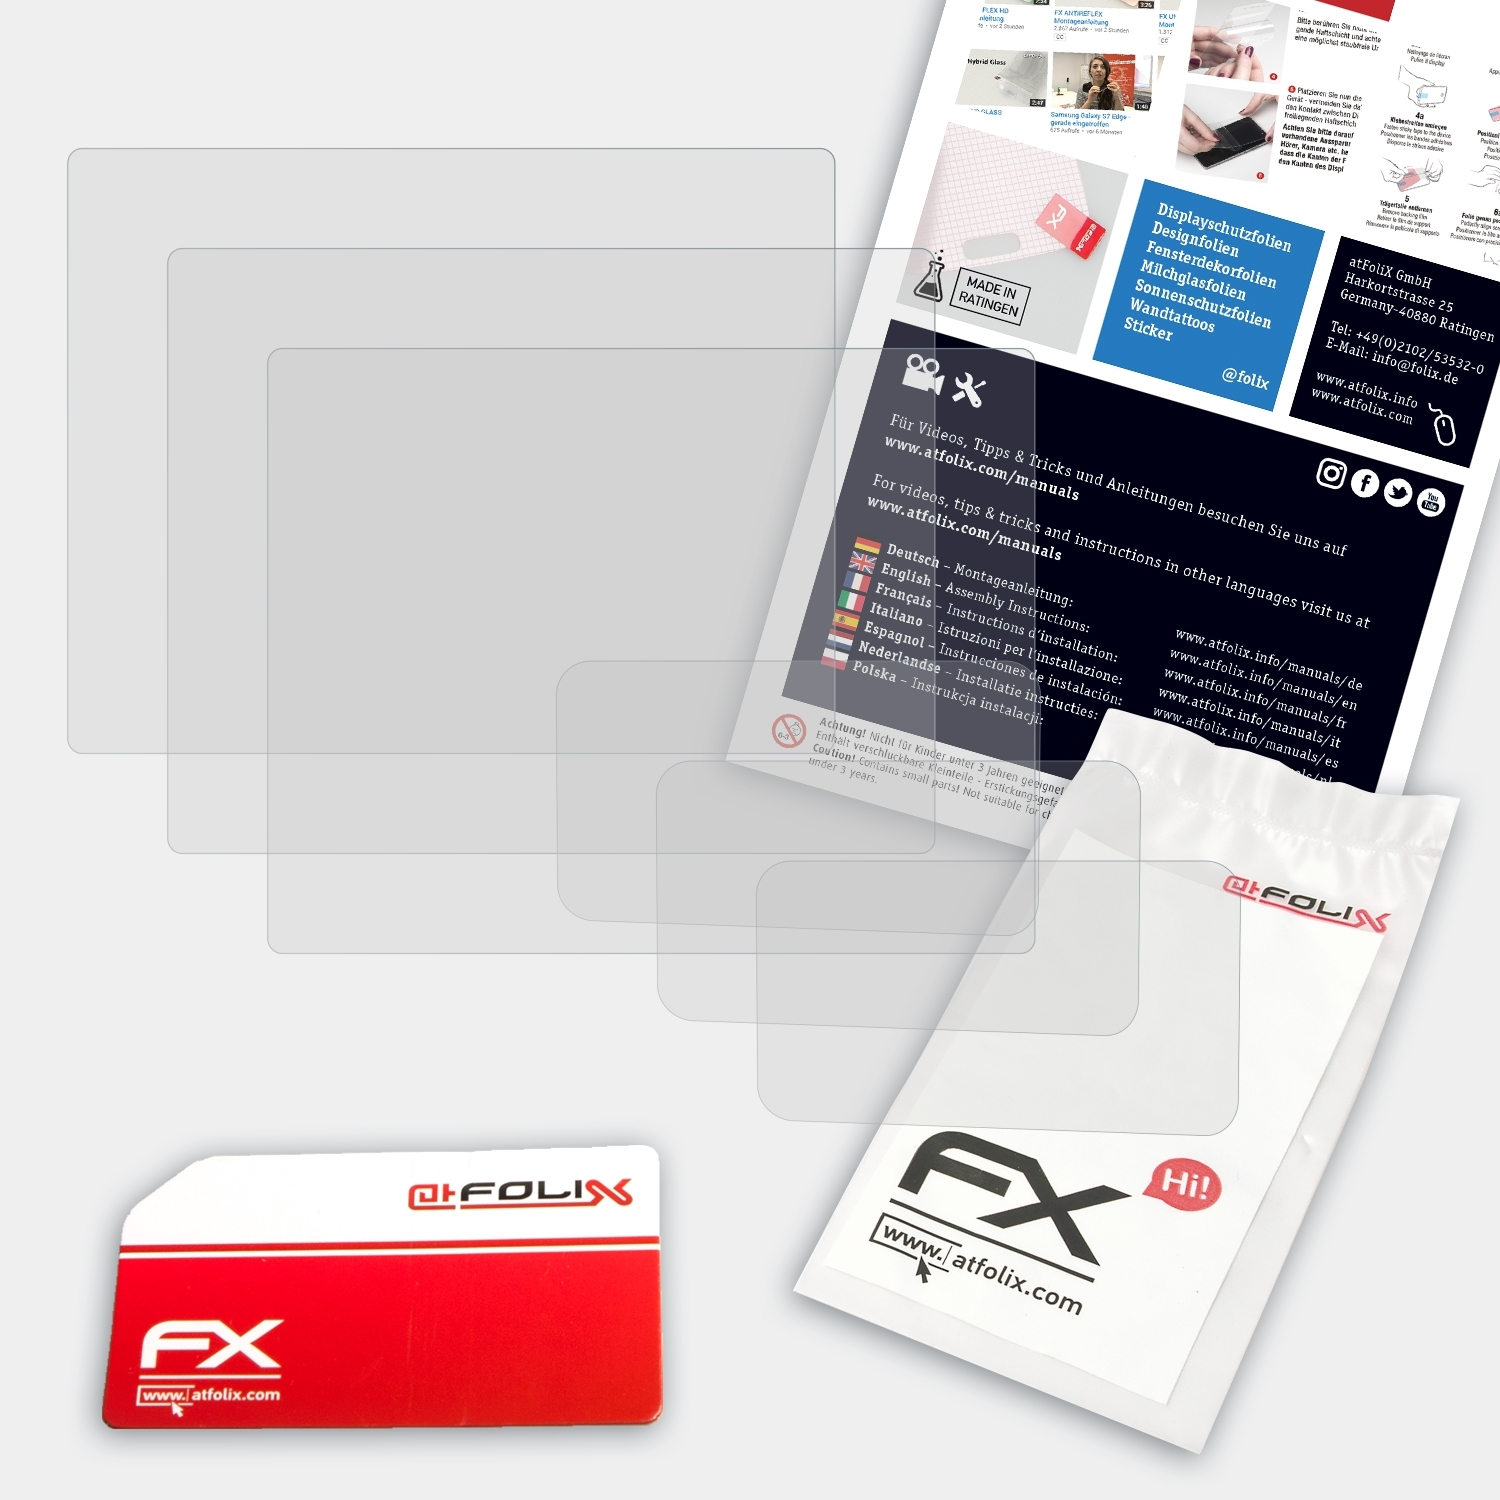 Pentax Displayschutz(für 3x K-7) ATFOLIX FX-Antireflex